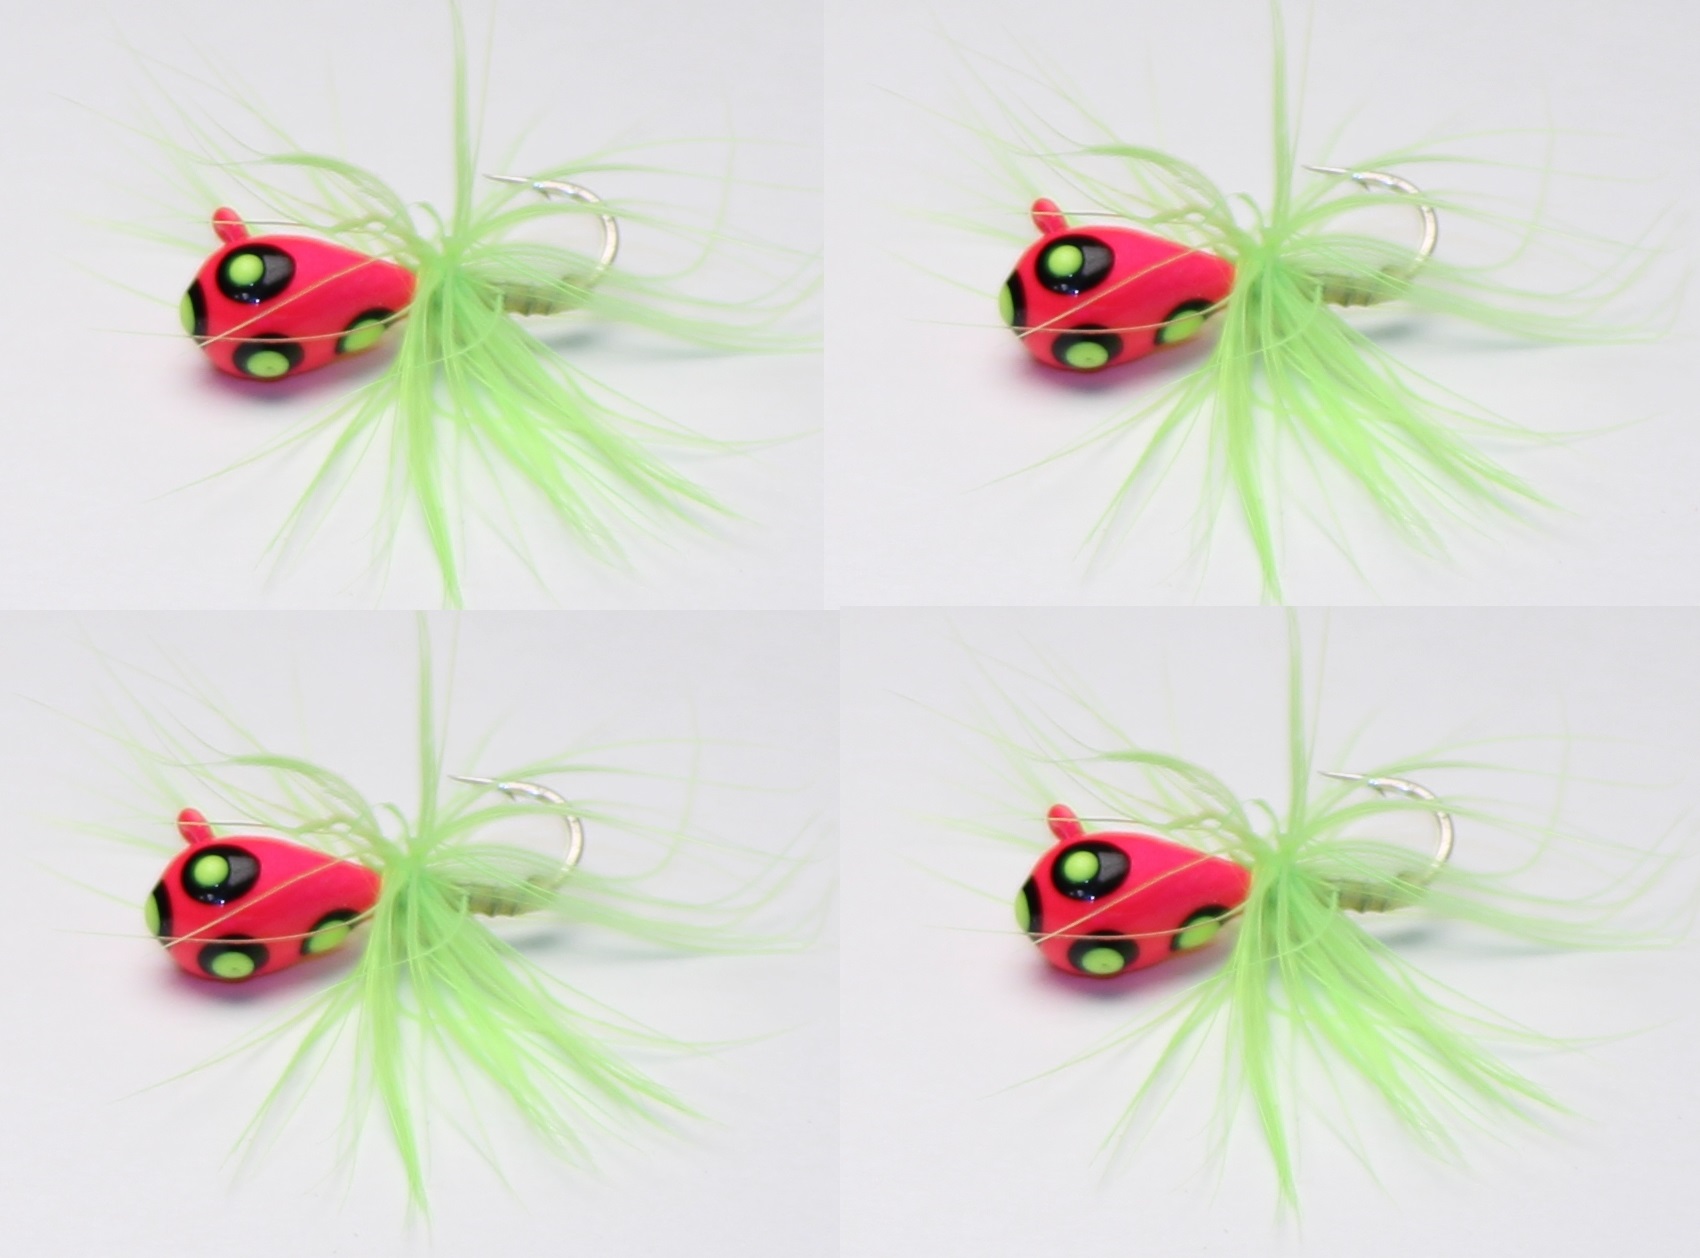 #911-f 4 each Tungsten Ice Fishing Tear Drop Jig 1.85 Gram #12 Hook w/Feather Glowing Pink Parrot